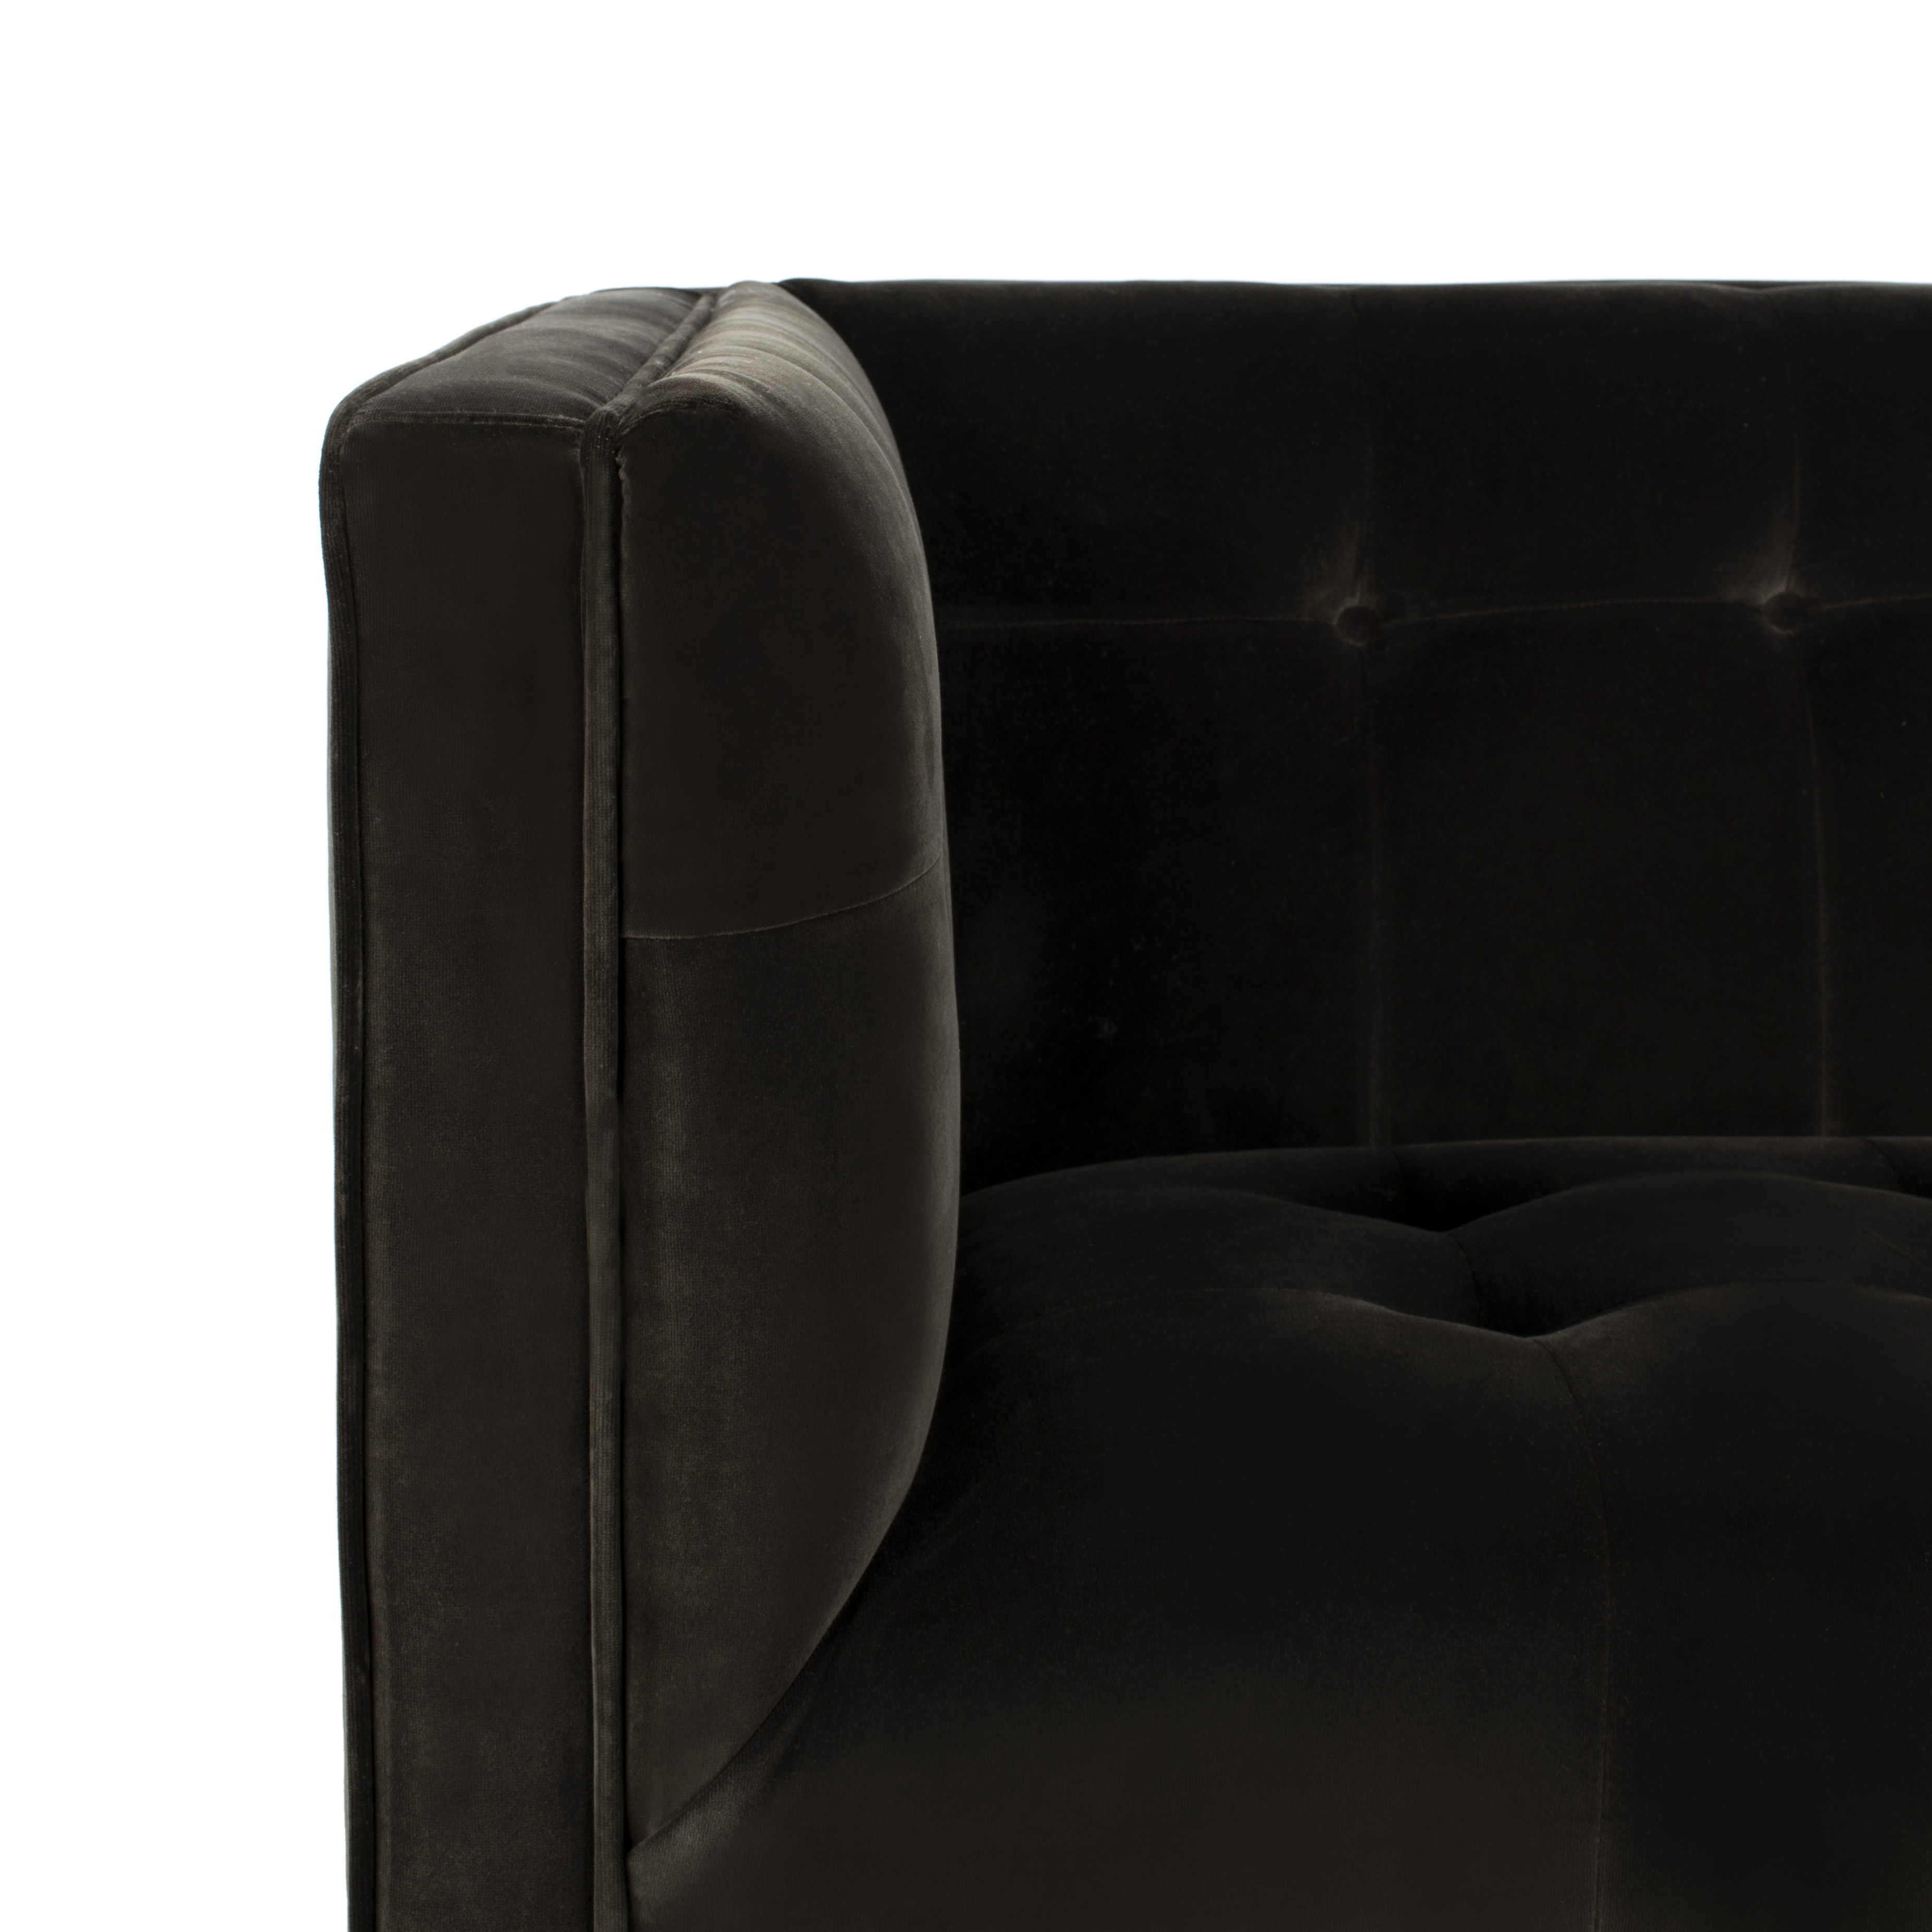 Sienne Tufted Velvet Sofa - Shale - Arlo Home - Image 5